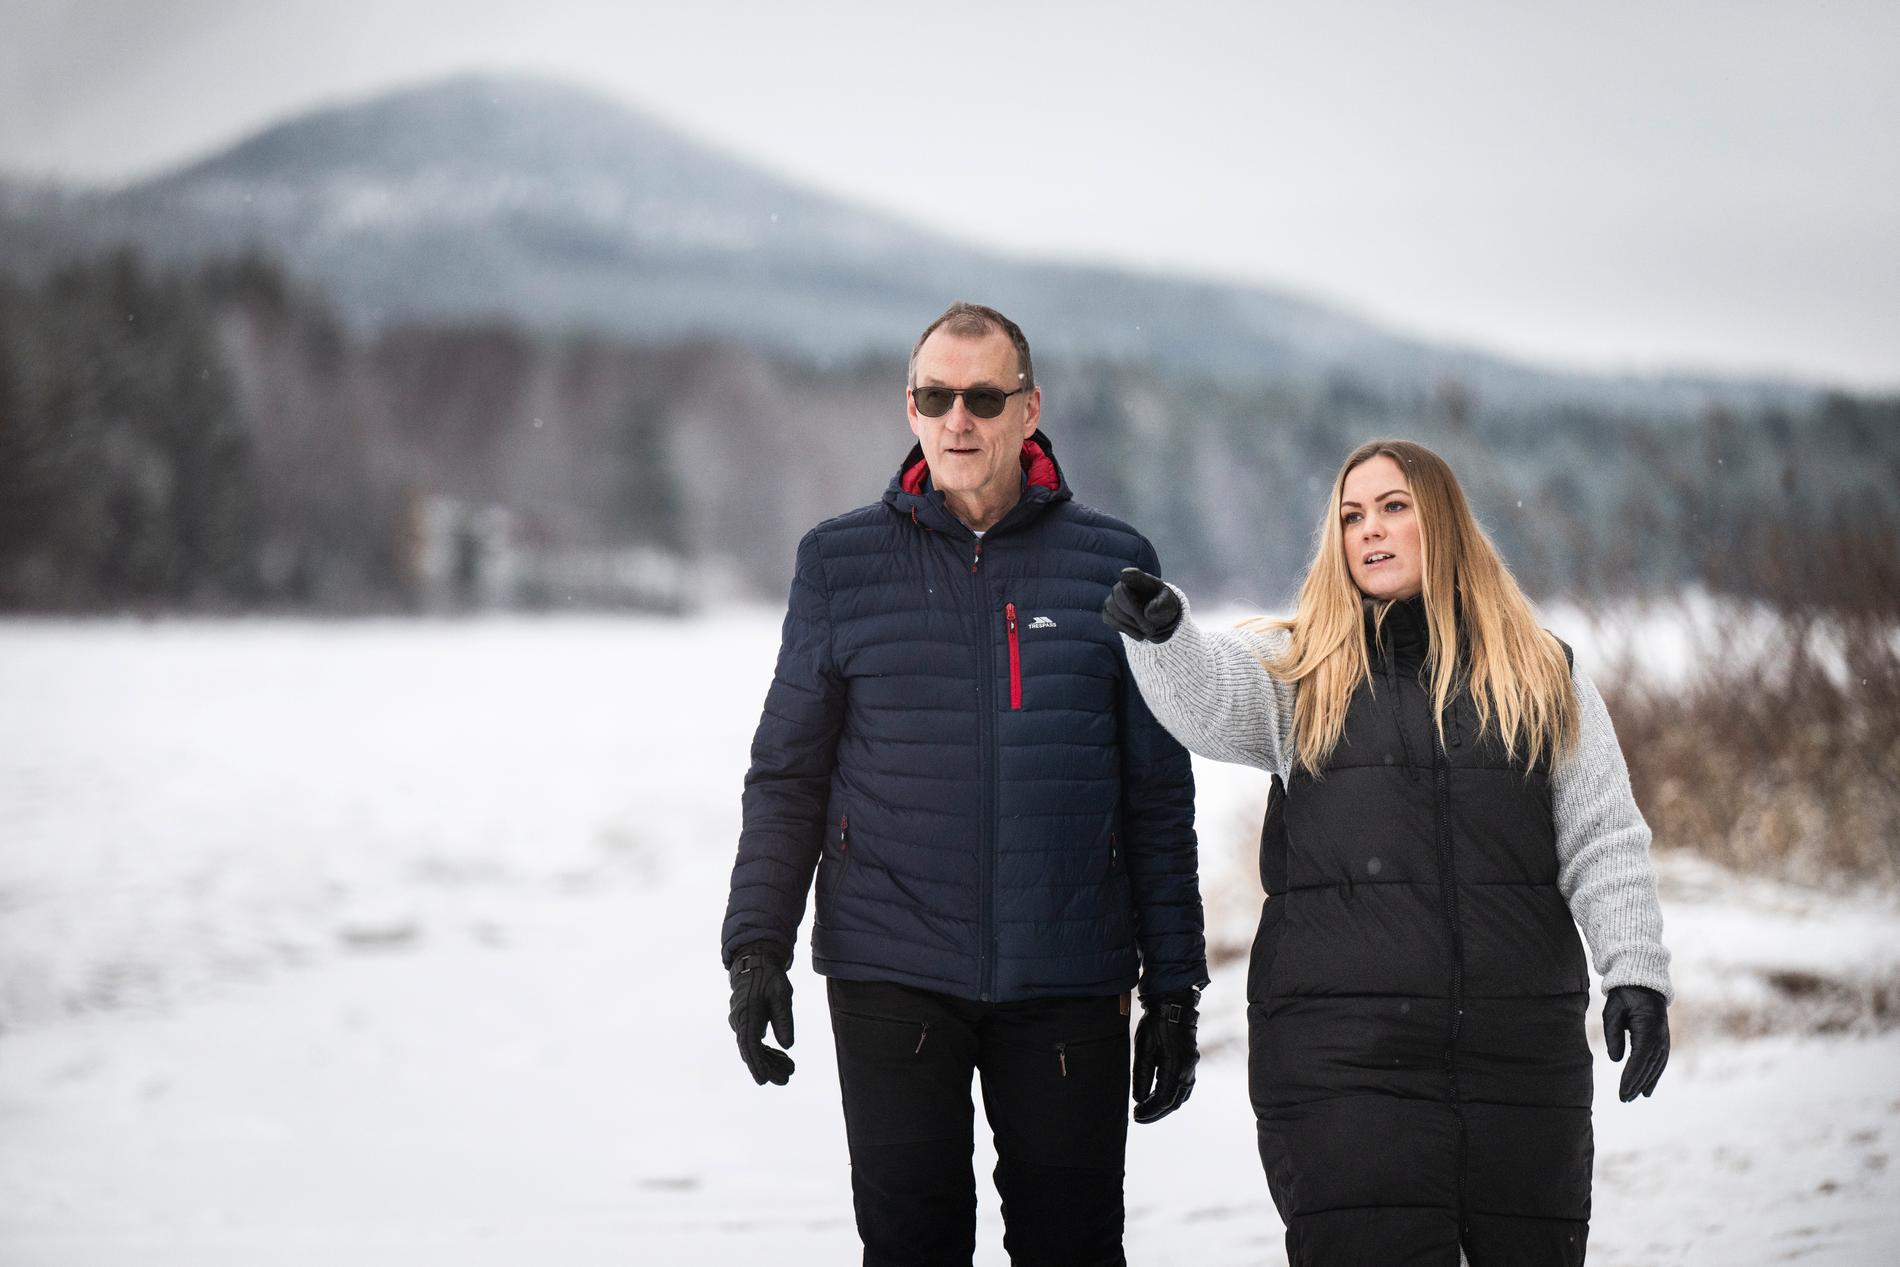 Allt hände blixtsnabbt när Josefine Nilsson, 32, och hennes pappa Anders Nilsson, 65, åkte genom isen i Kalixälven. ”Isen bara brister, väldigt mjukt, den faller ner under oss”, berättar Josefine, som räddade sin pappas liv.